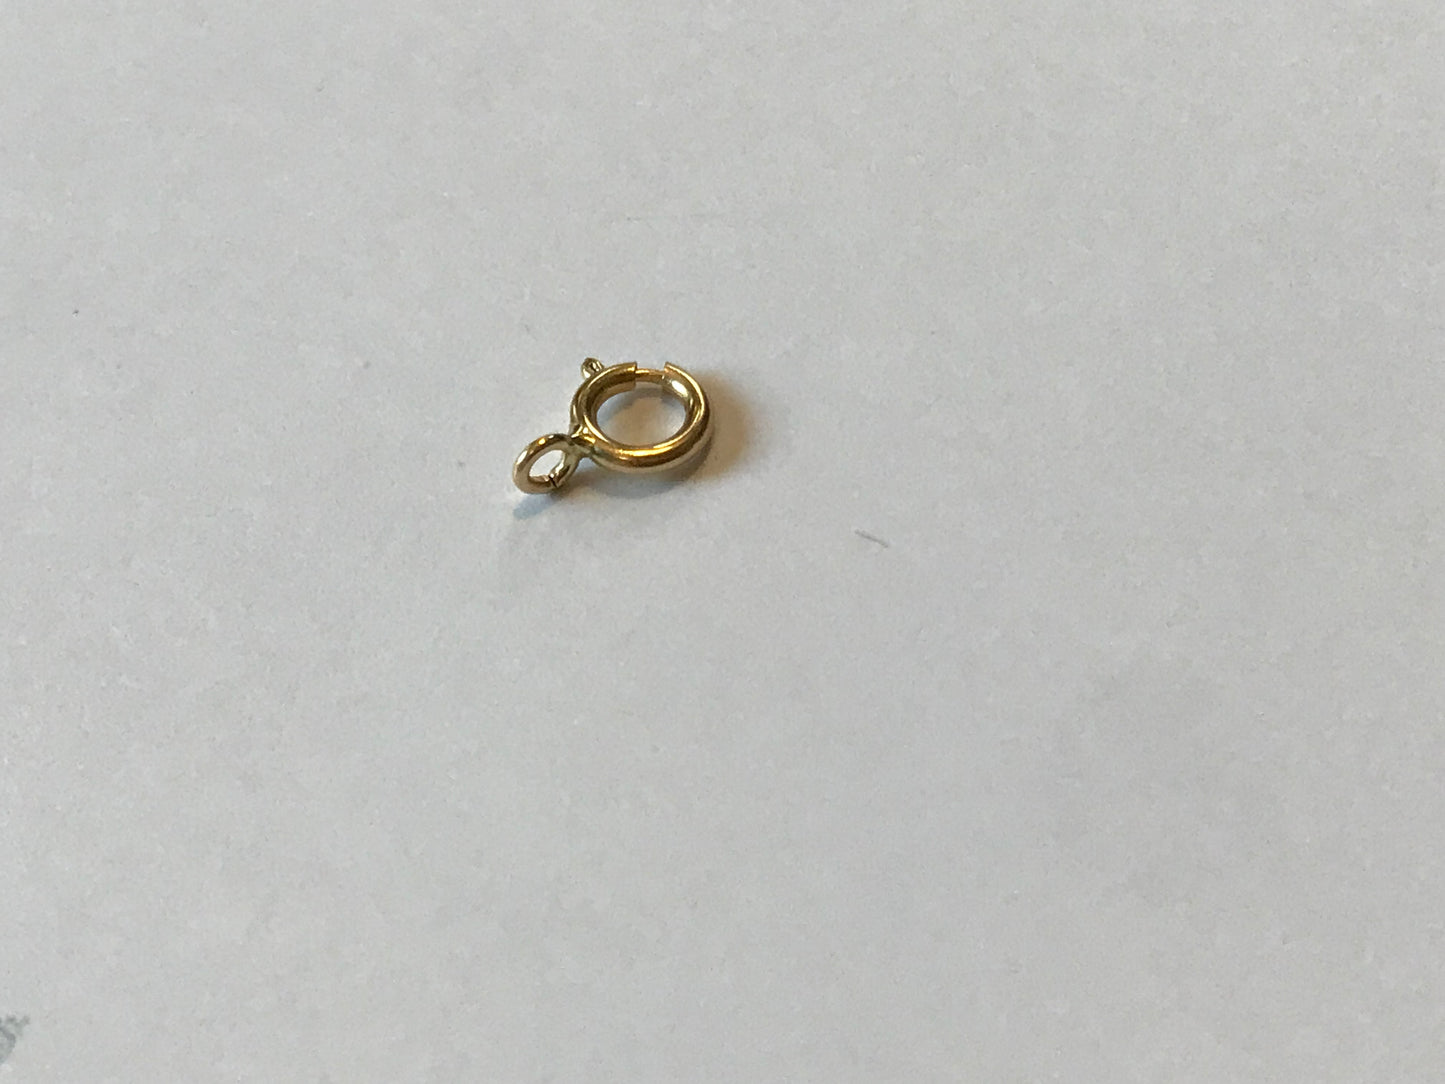 Fermoir or 18 carats anneau ressort, anneau de bout ouvert ou fermé